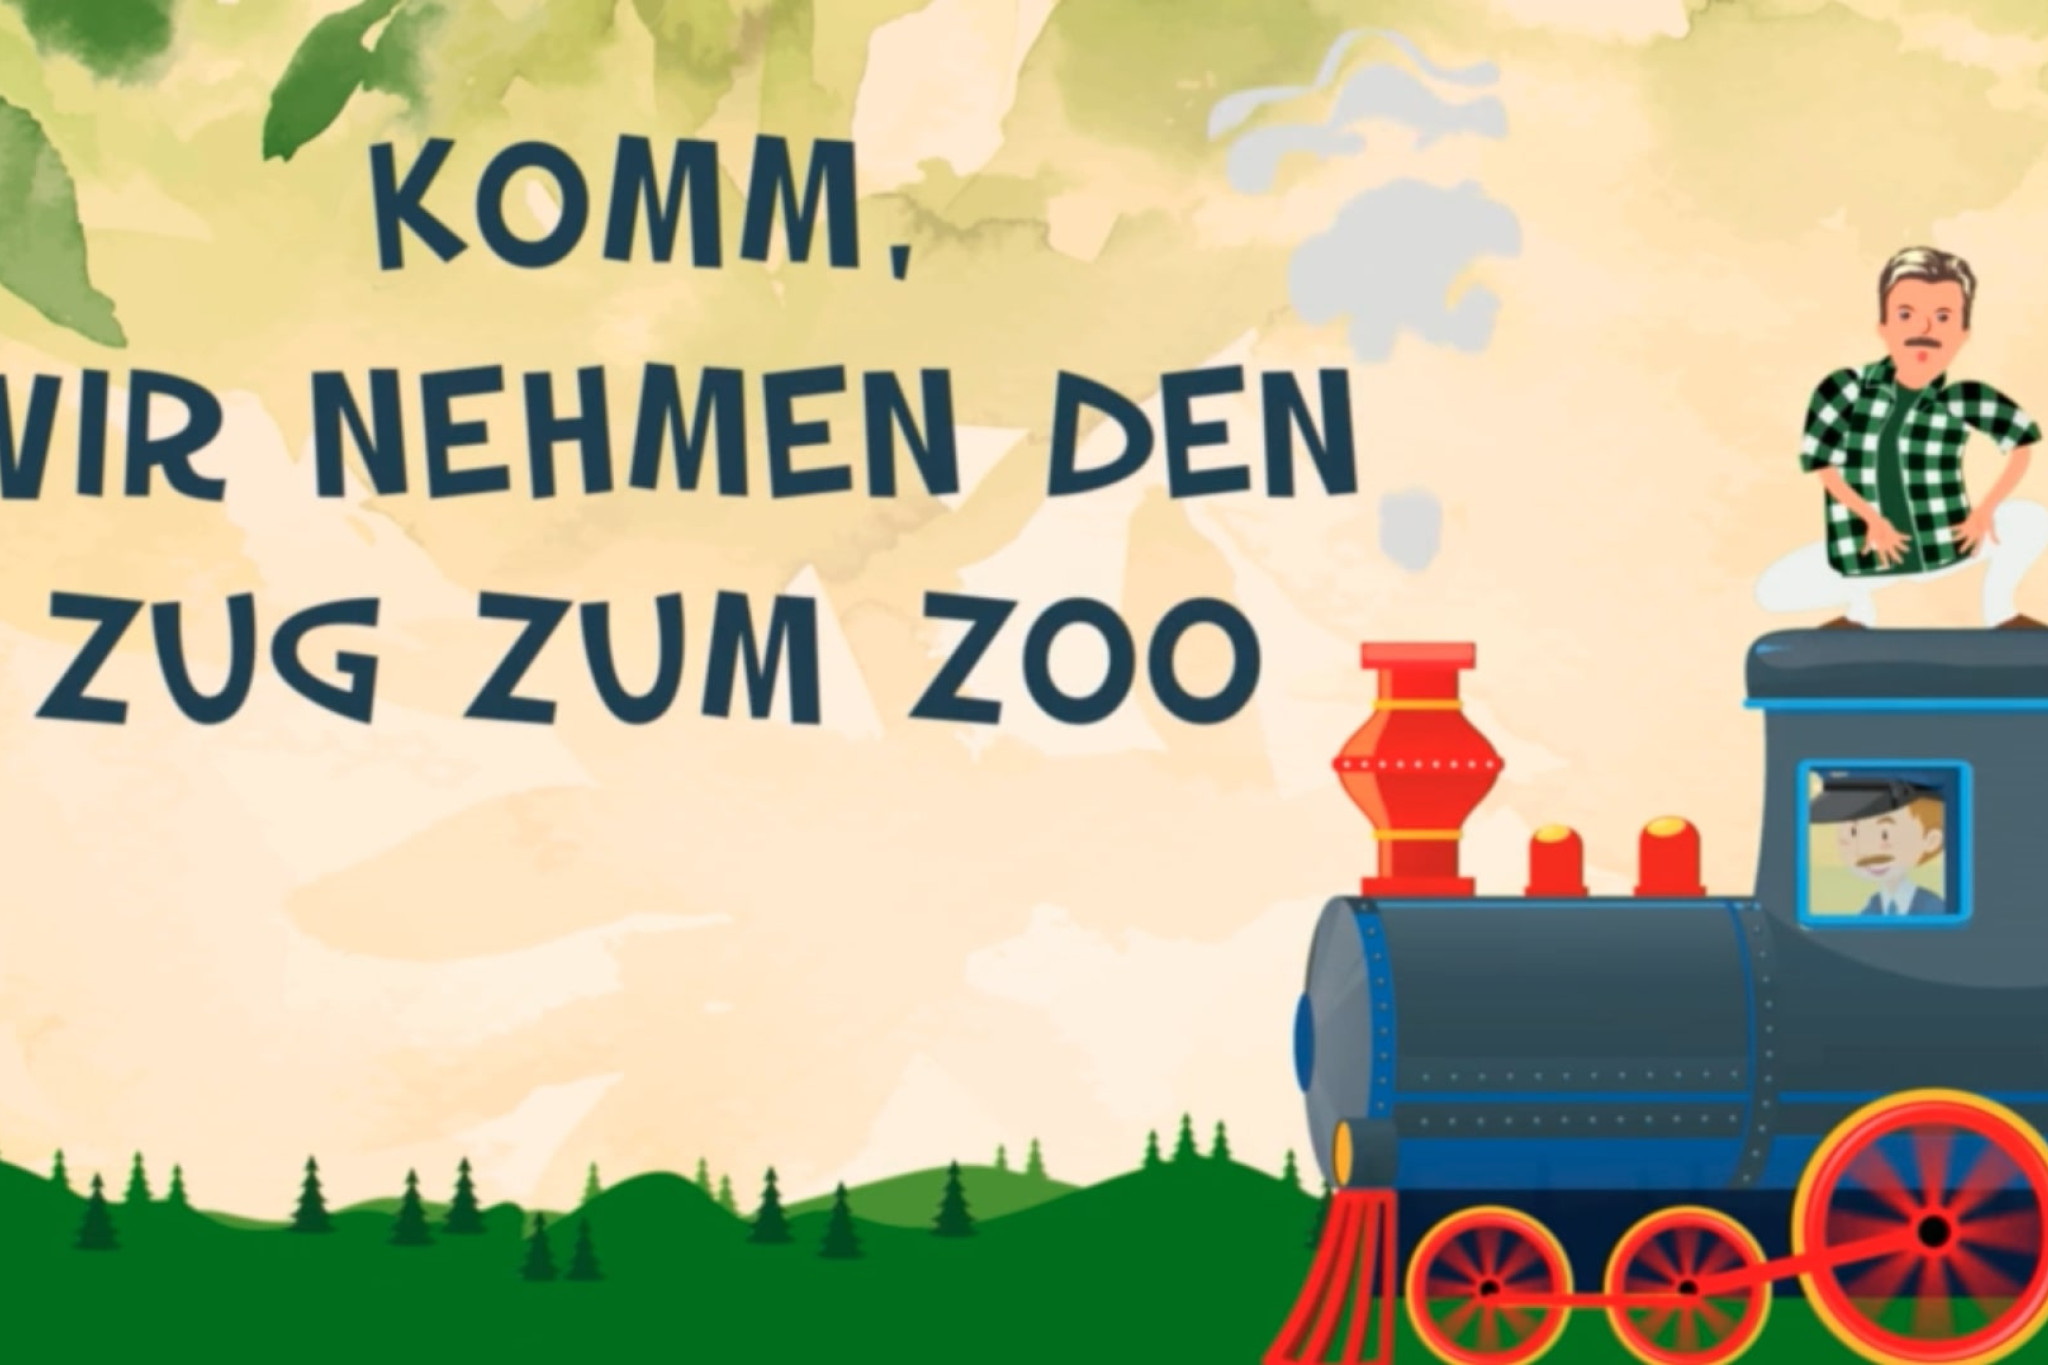 Volker Rosin - Der Zug zum Zoo